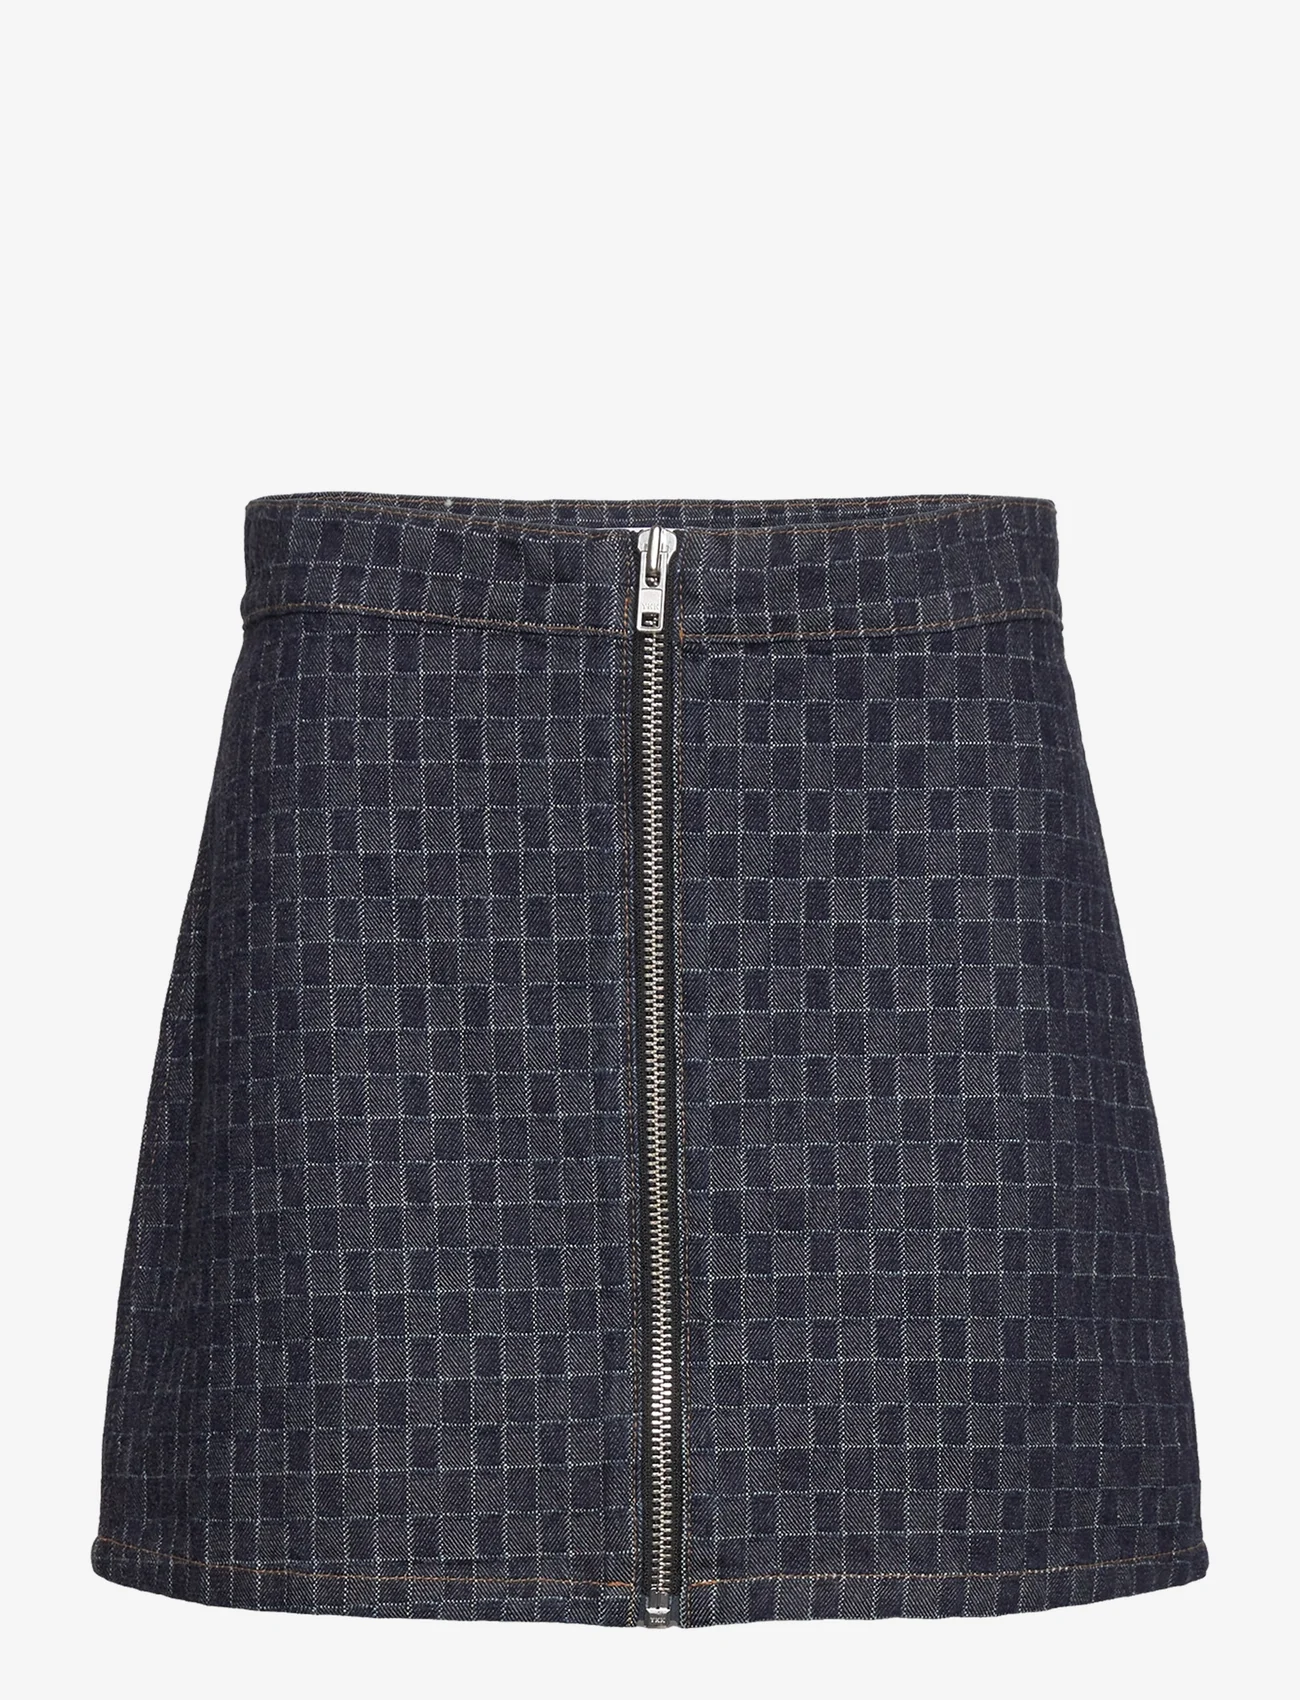 Hope - Brick Skirt Textured Indigo - korte nederdele - textured indigo - 0